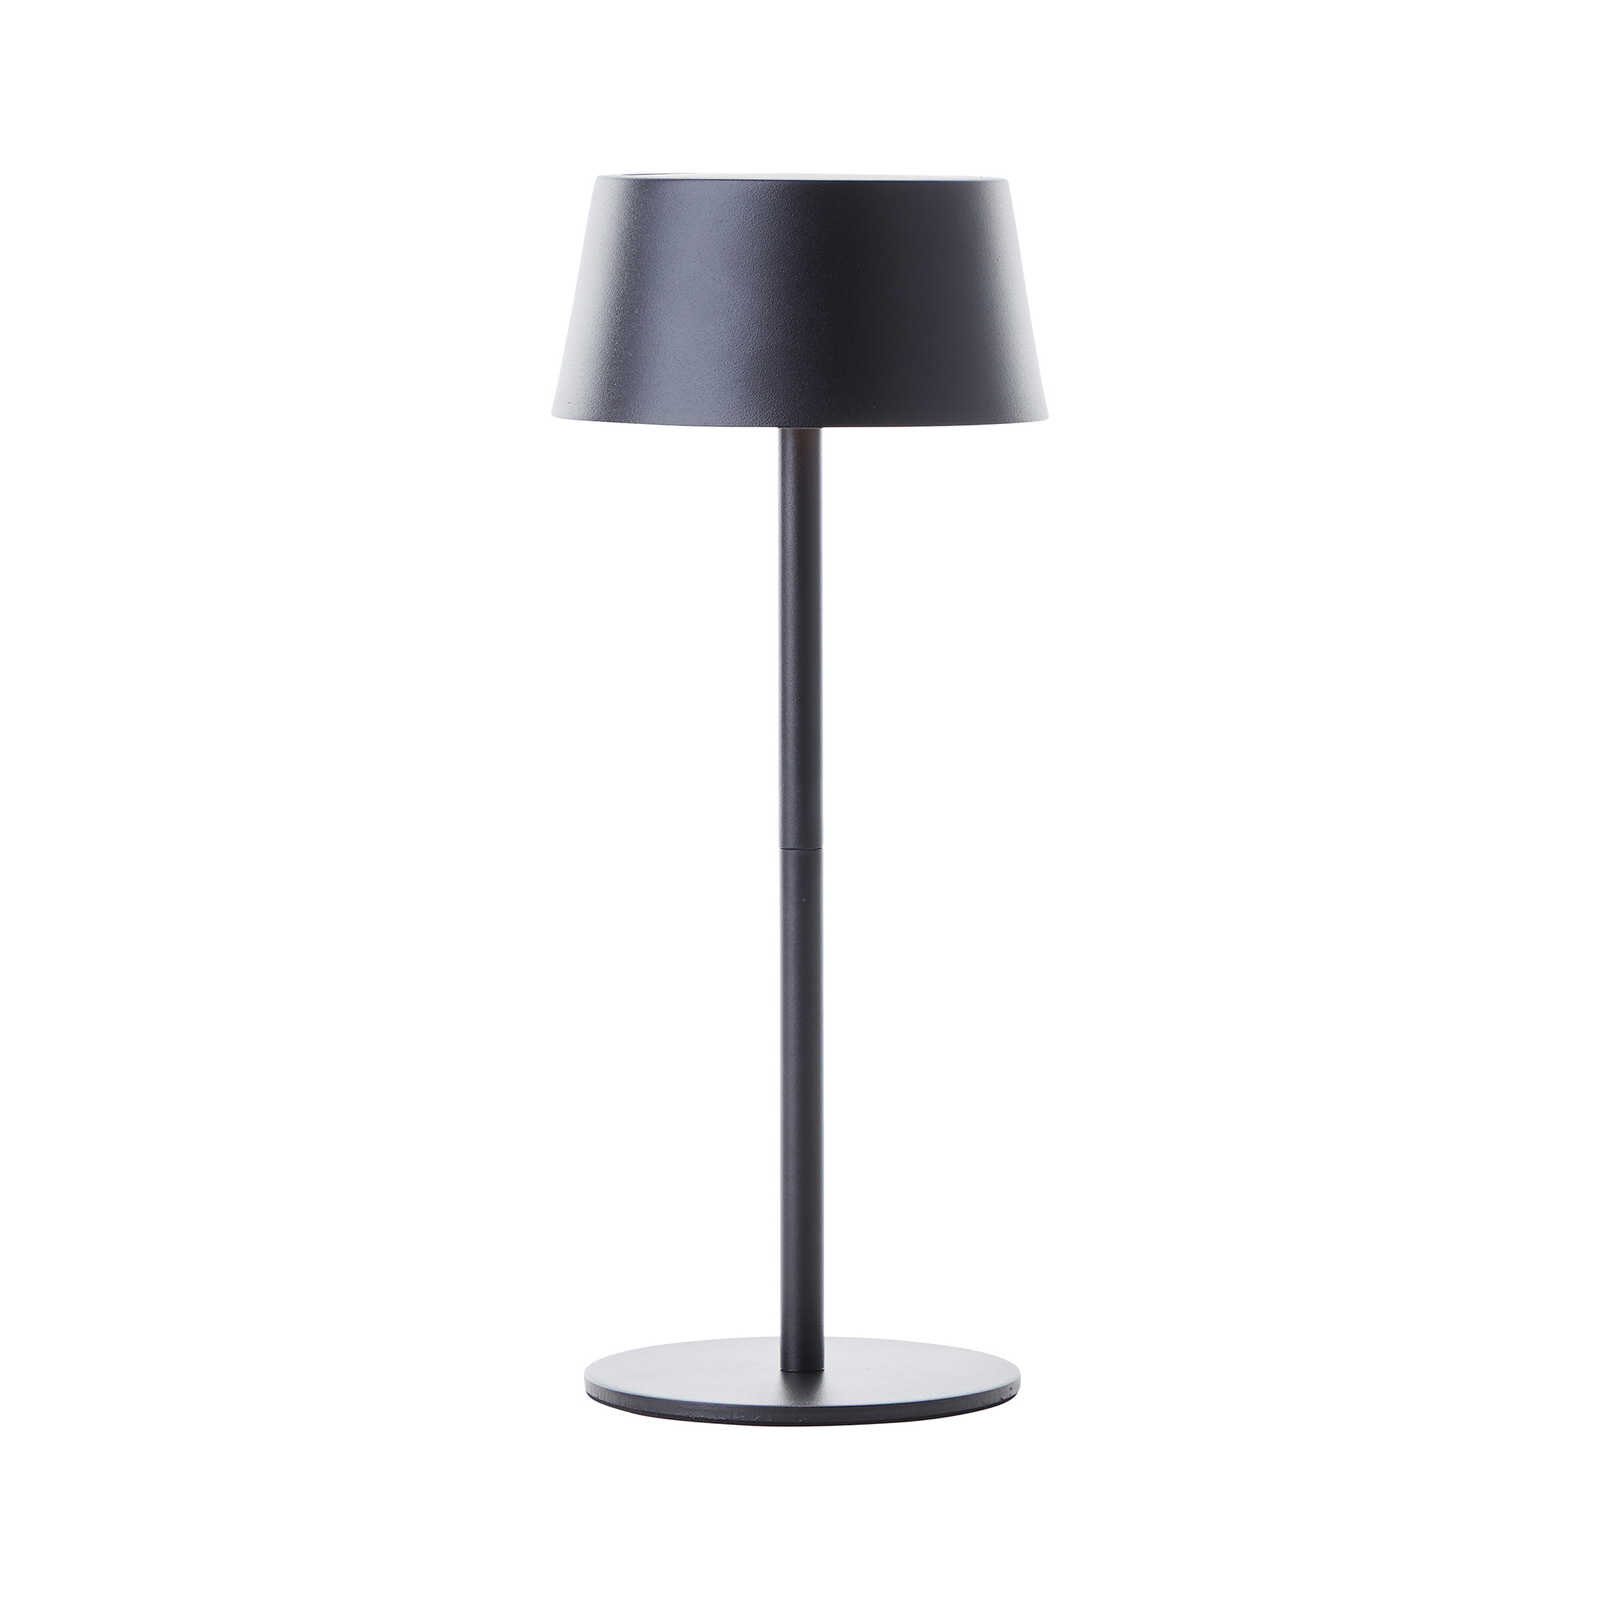 Metalen tafellamp - Outy 3 - Zwart
